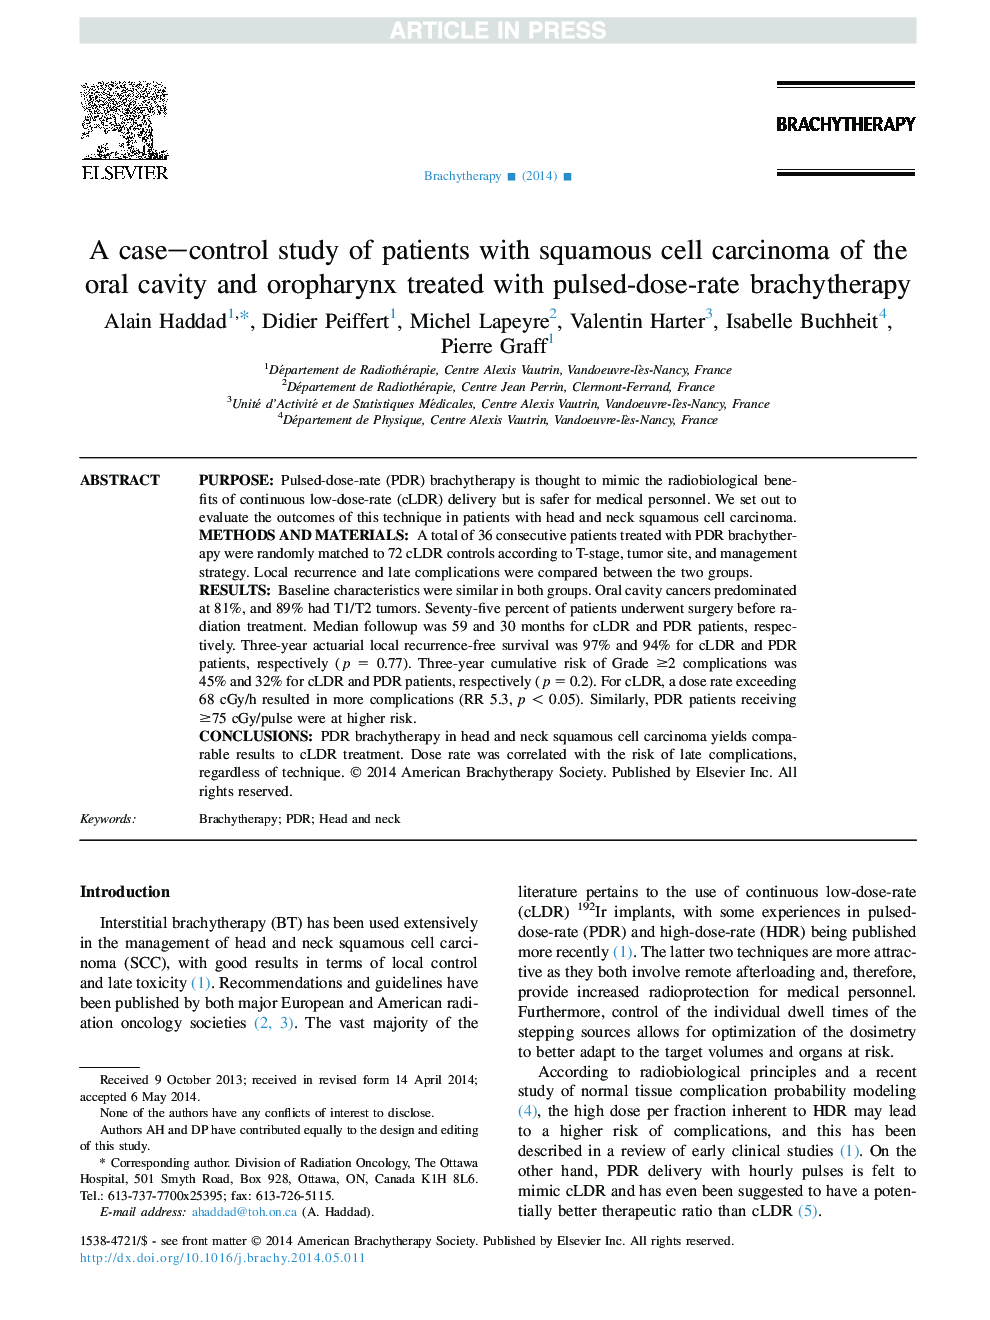 یک مطالعه مورد-شاهدی از بیماران مبتلا به کارسینوم سلول سنگفرشی حفره دهان و ریفارنکس با درمان برشیتراپی با دوز پالس 